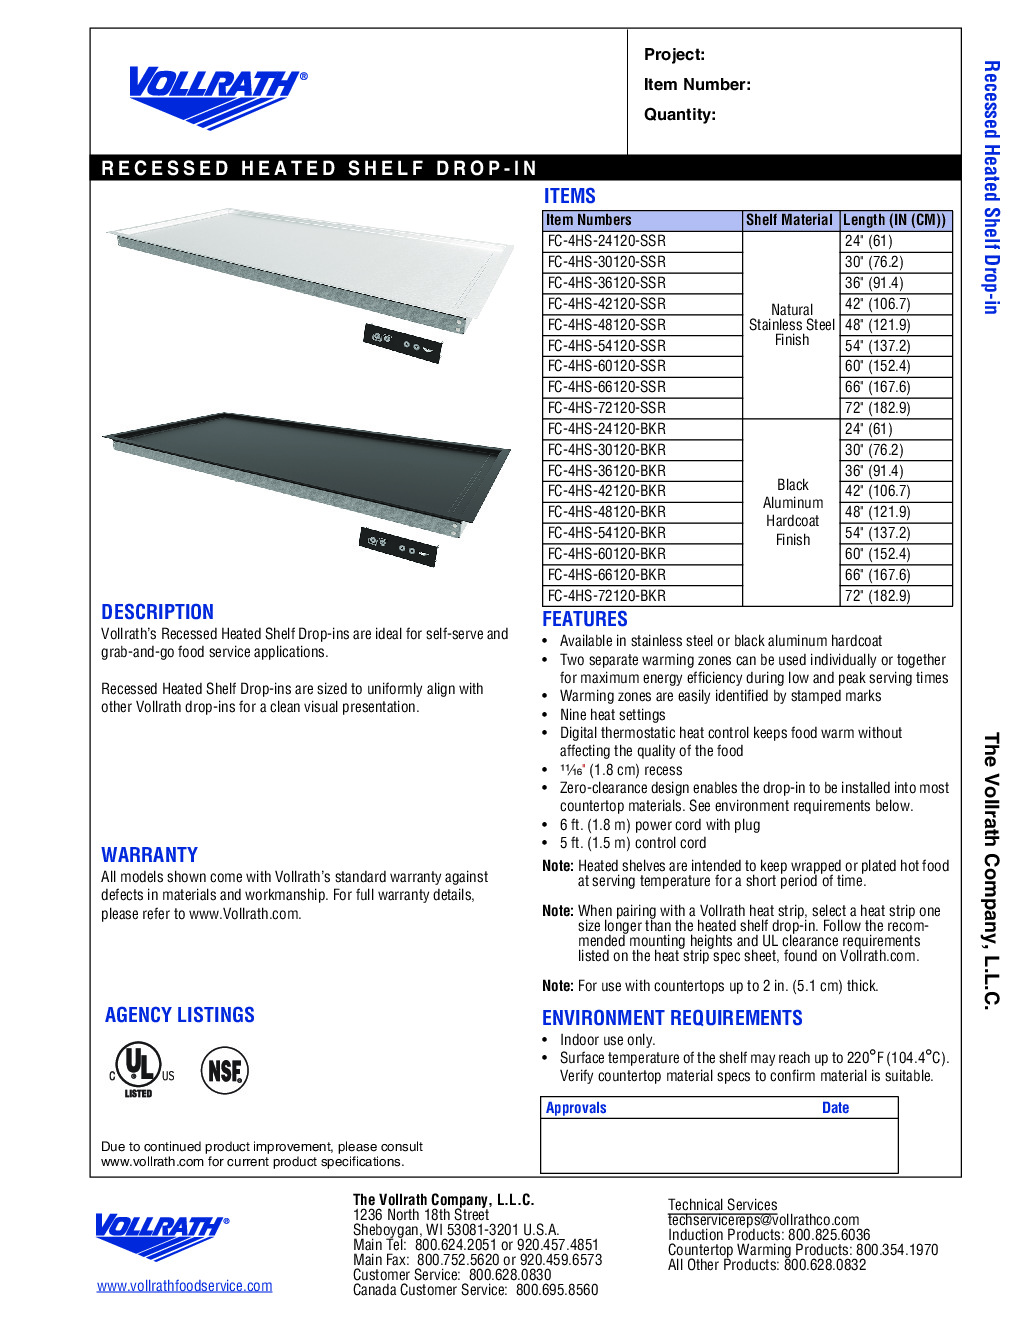 Vollrath FC-4HS-30120-BKR Heated Shelf Food Warmer